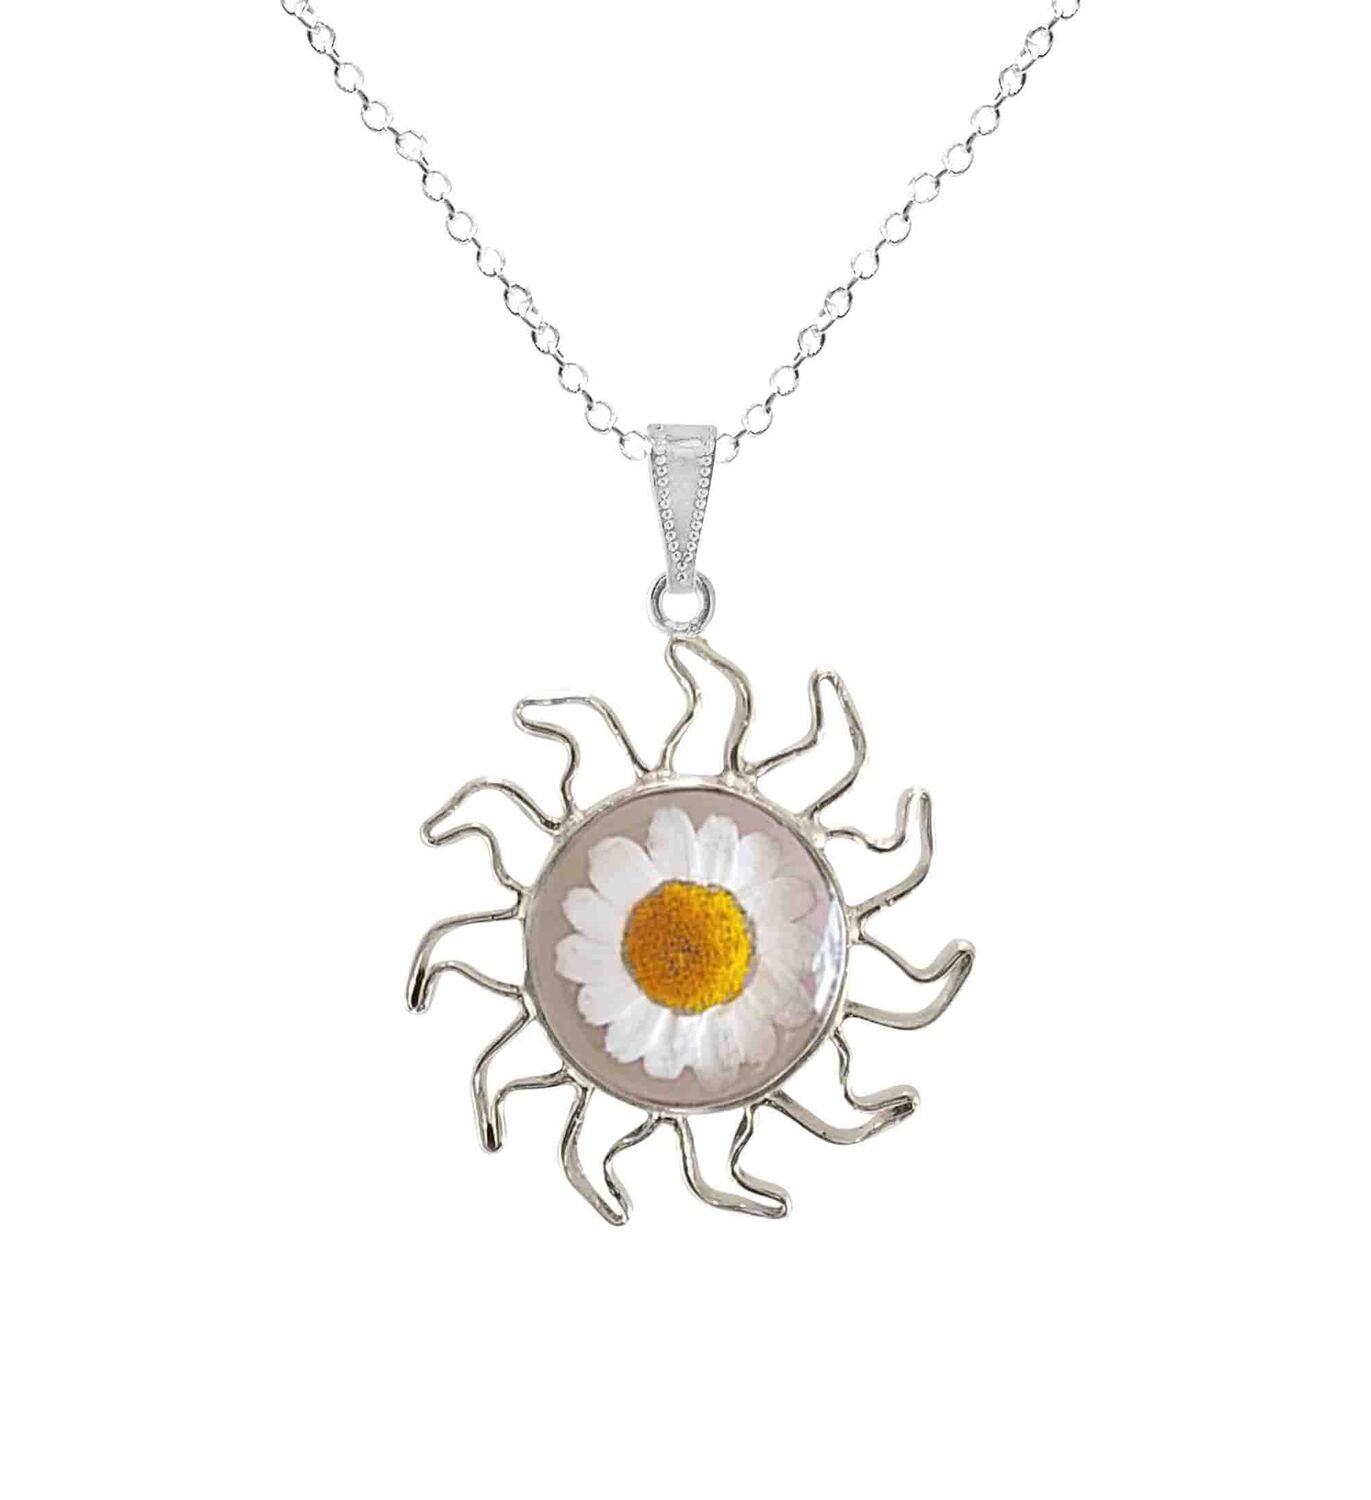 Daisy Necklace, Sun Pendant, Transparent